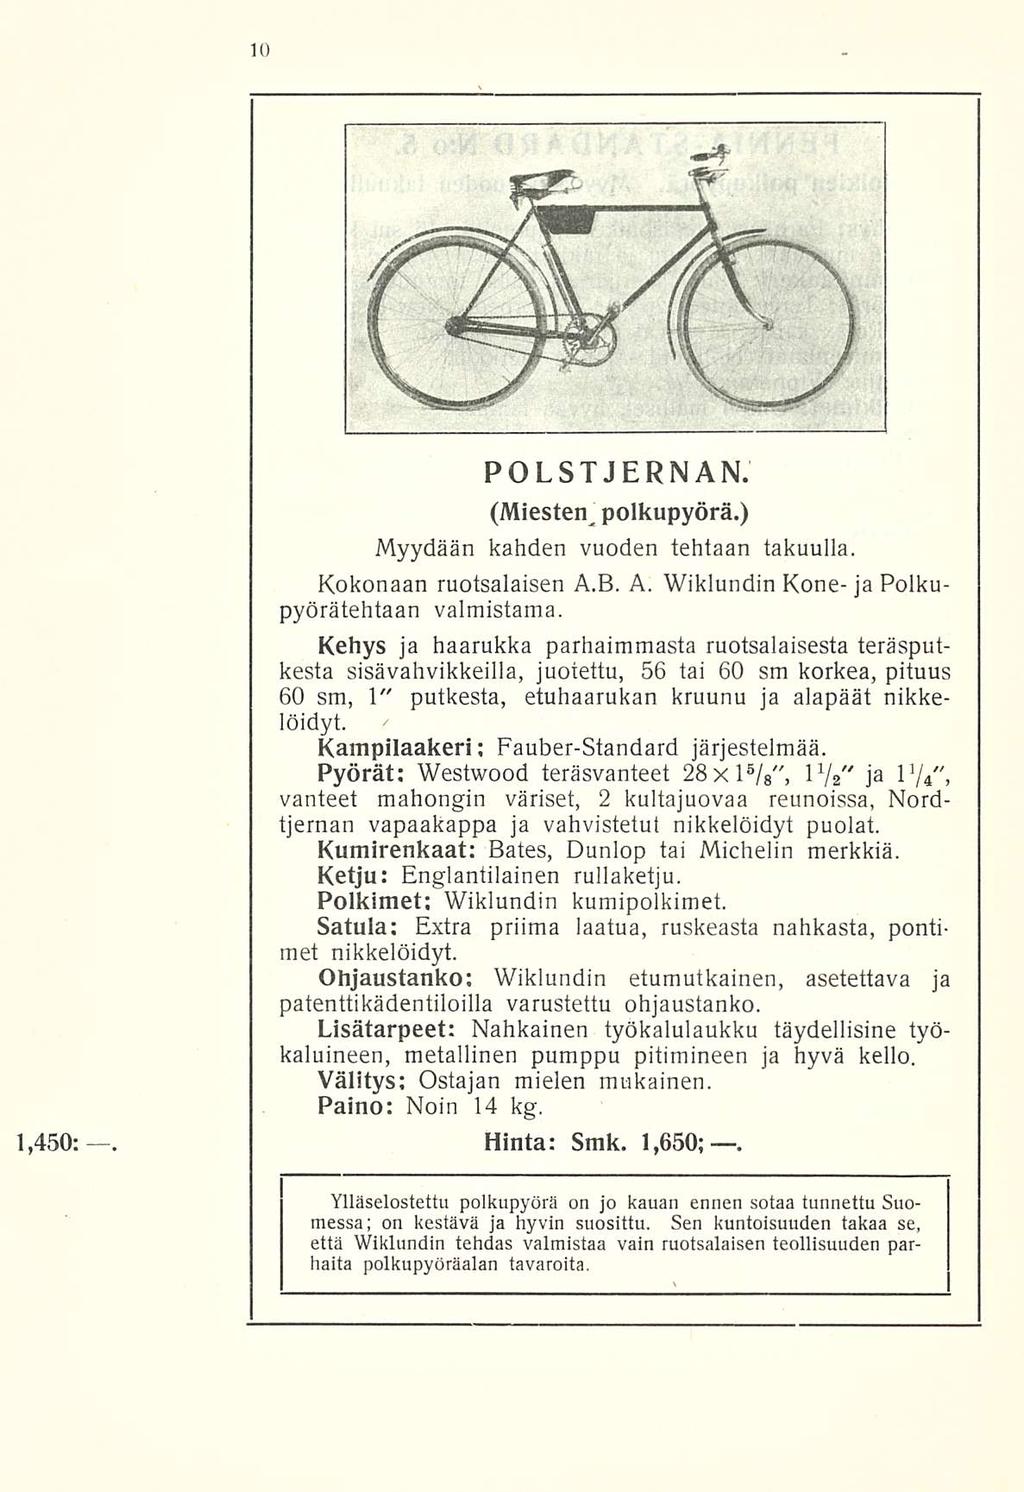 POLSTJERNAN. polkupyörä.) Myydään kahden vuoden tehtaan takuulla. Kokonaan ruotsalaisen A.B. A. Wiklundin Kone- ja Polkupyöräteiltään valmistama.